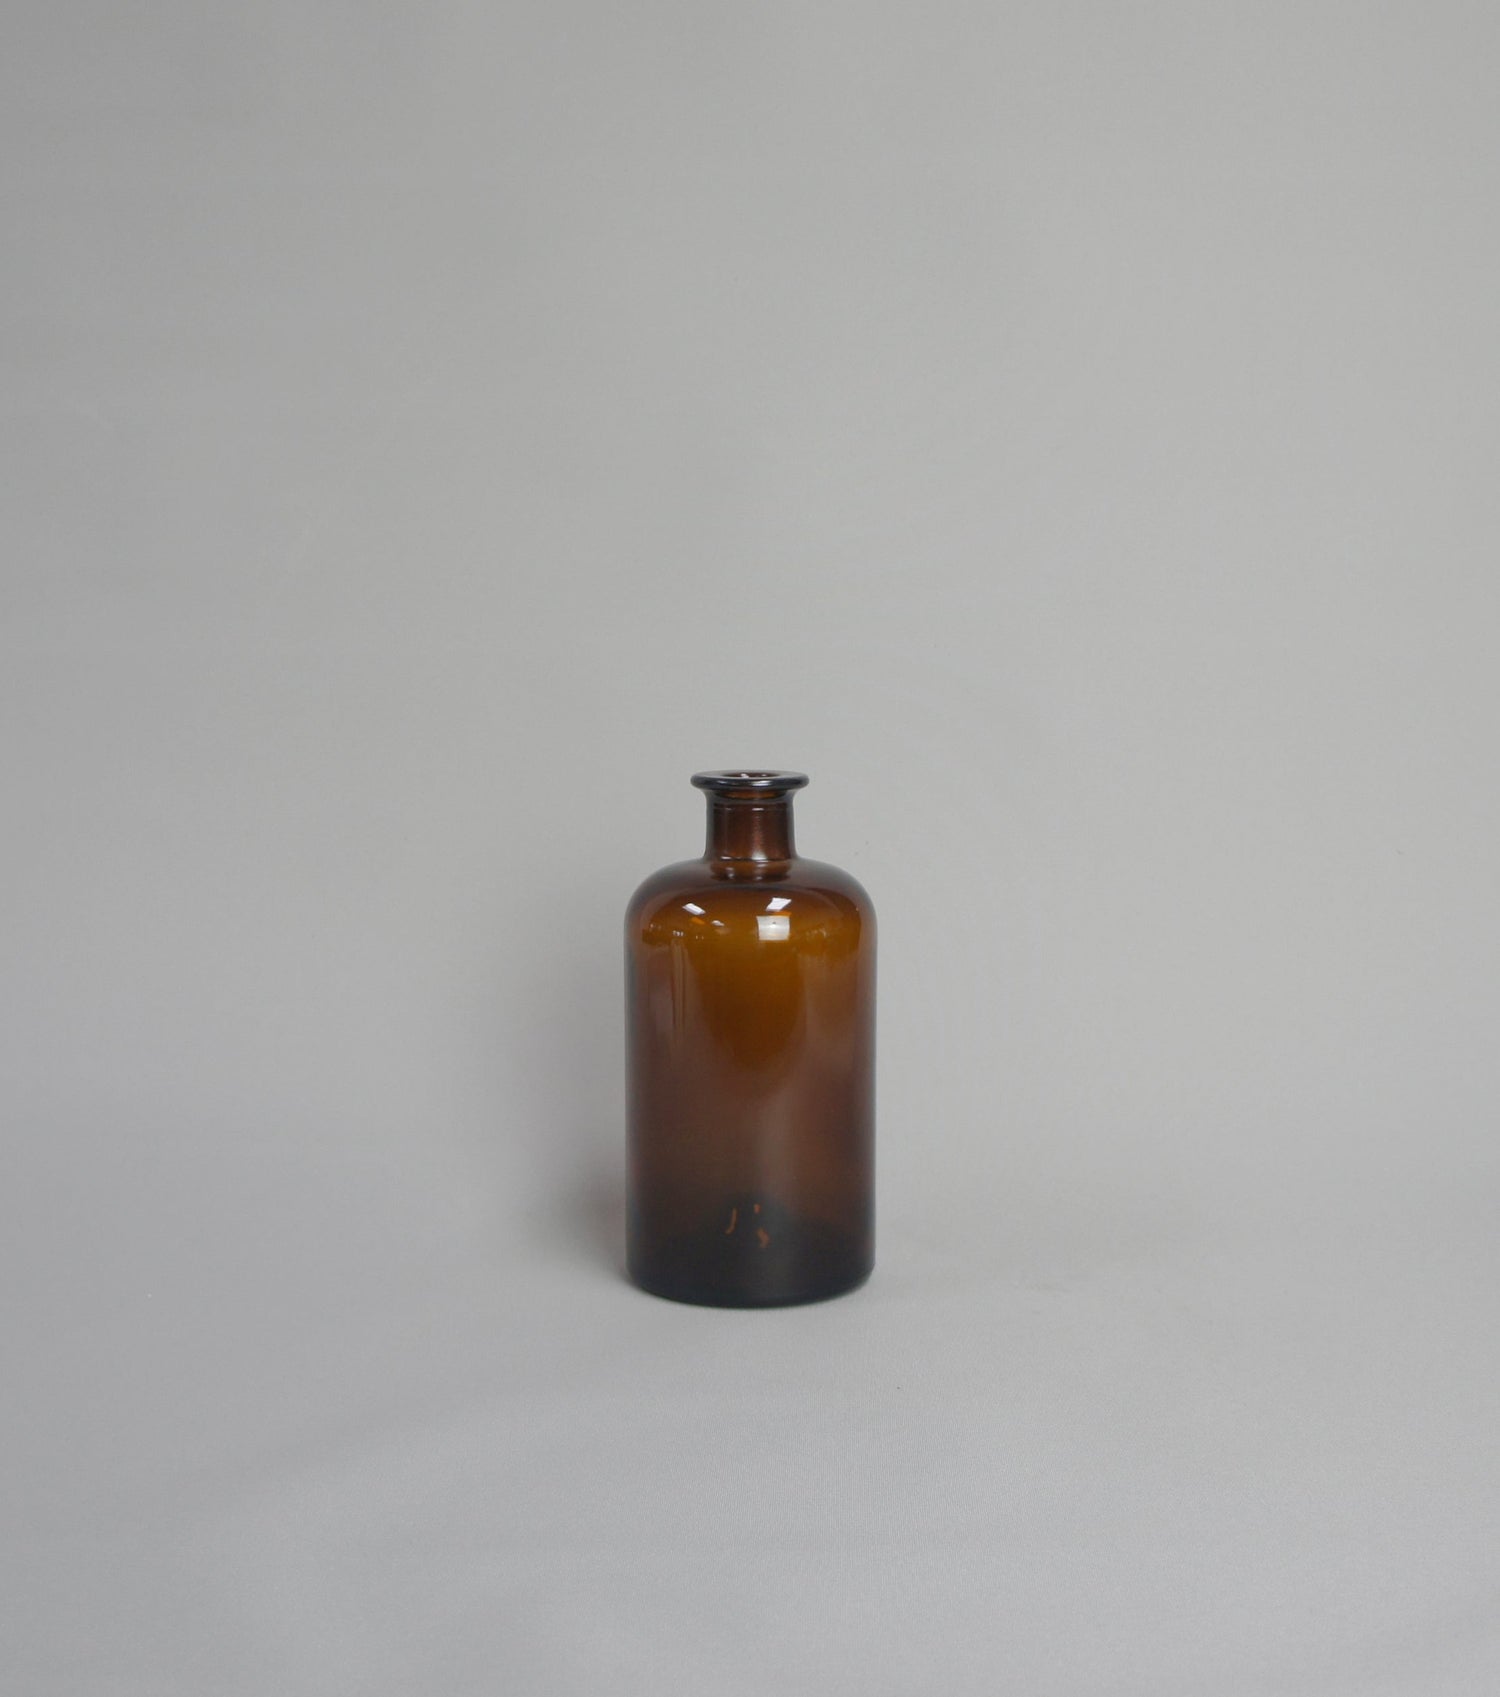 Apothekerflasche, Farbe Braun, zylindrisch mit Schmalhals